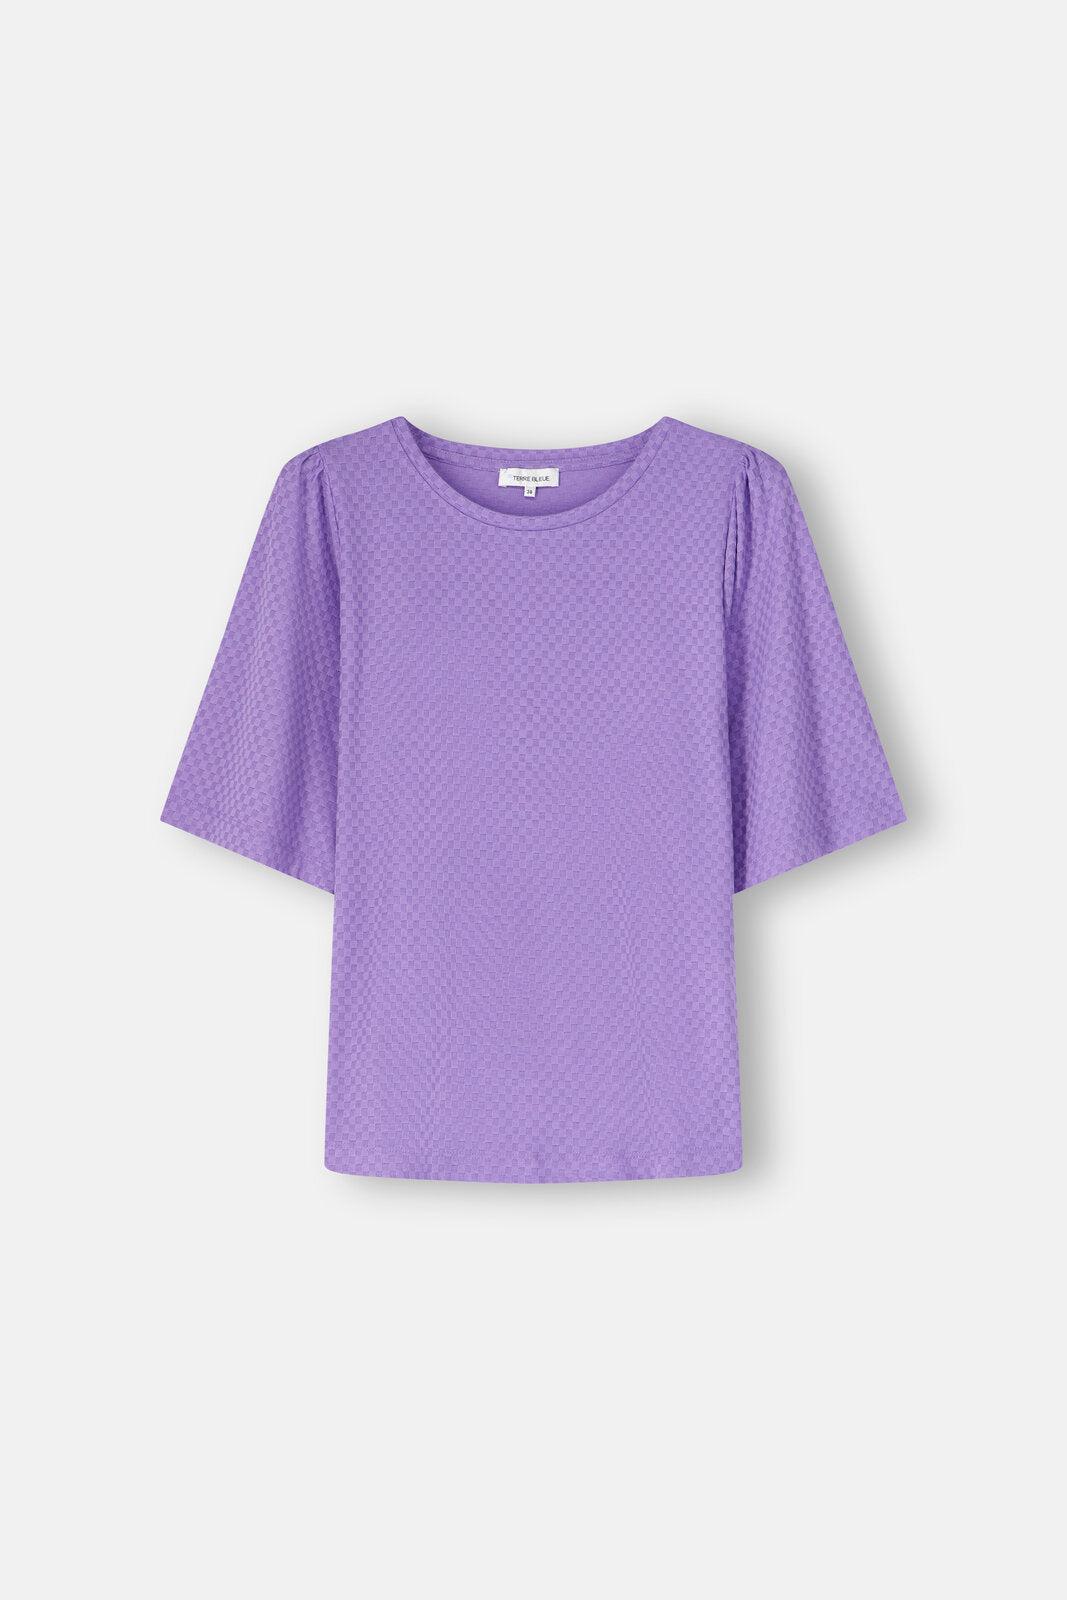 T-Shirt Violet Terre Bleue (Brit/334)